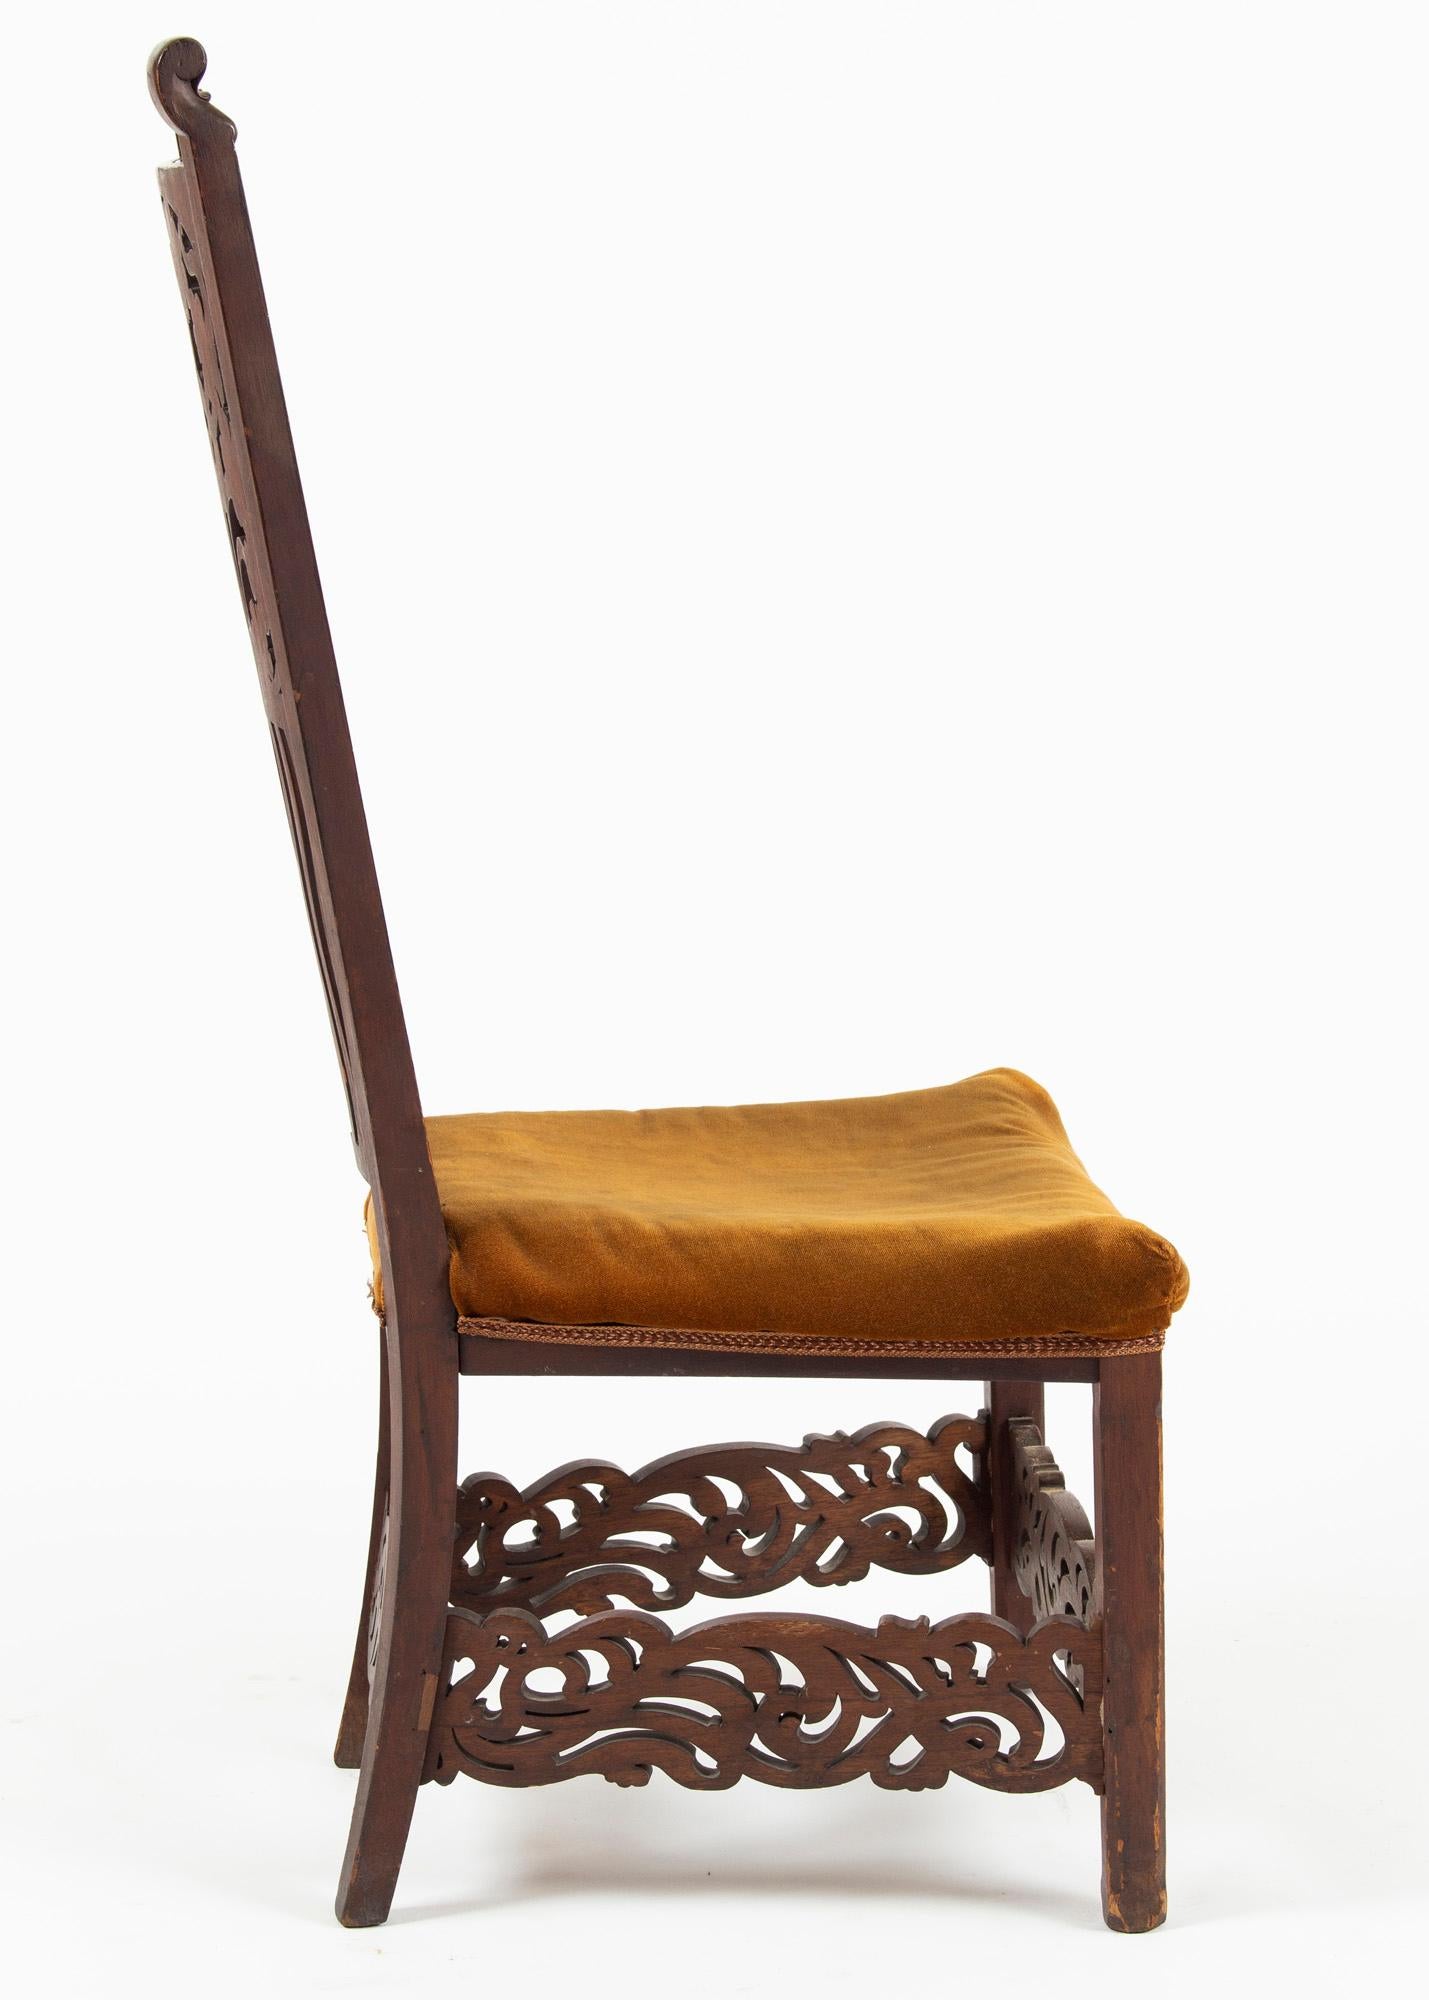 Unique Rippl-Rónai József Art Nouveau Chairs, circa 1900s For Sale 2